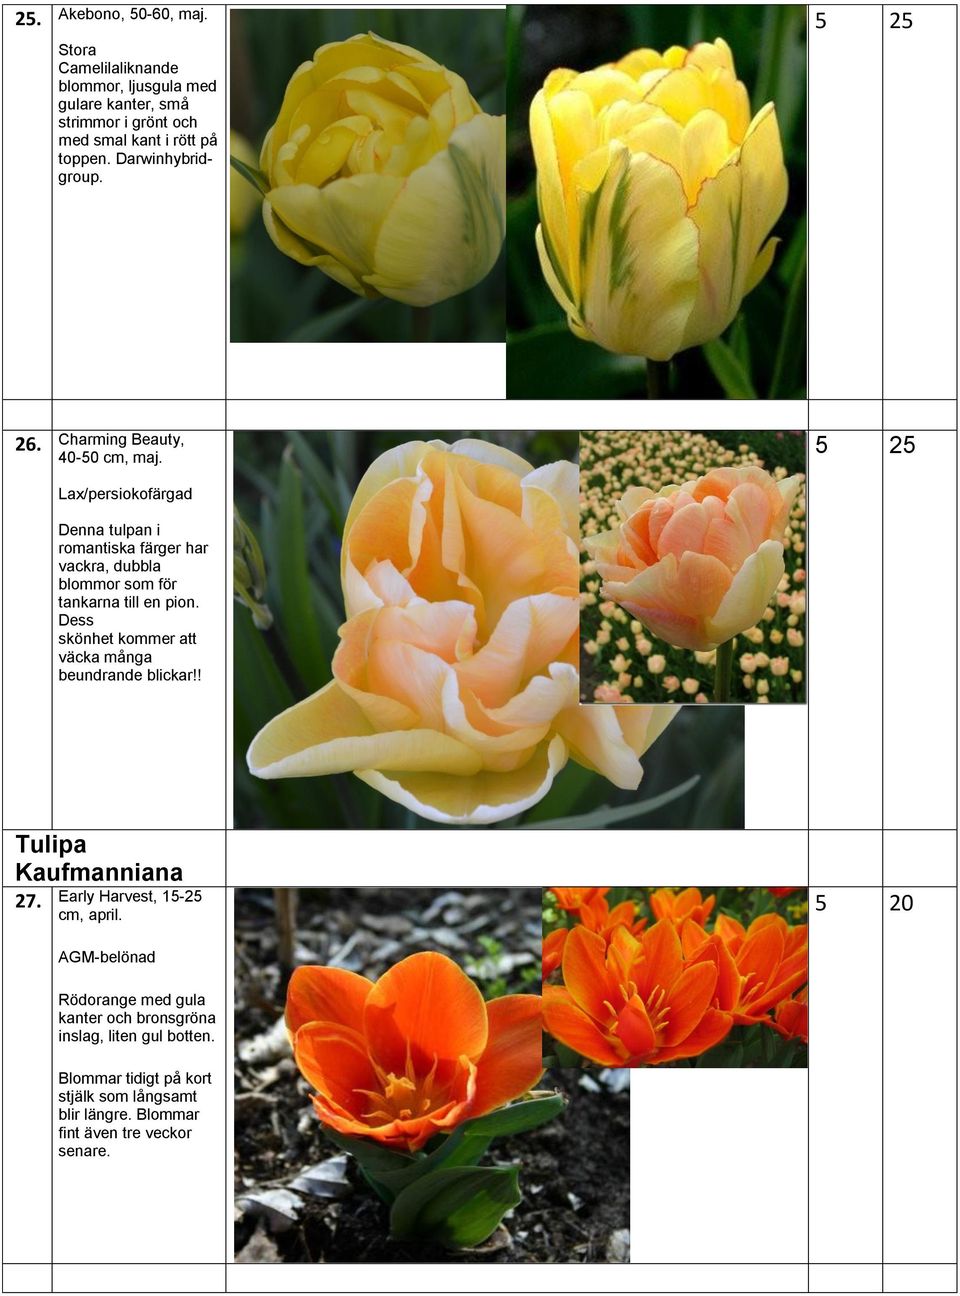 Lax/persiokofärgad Denna tulpan i romantiska färger har vackra, dubbla blommor som för tankarna till en pion.